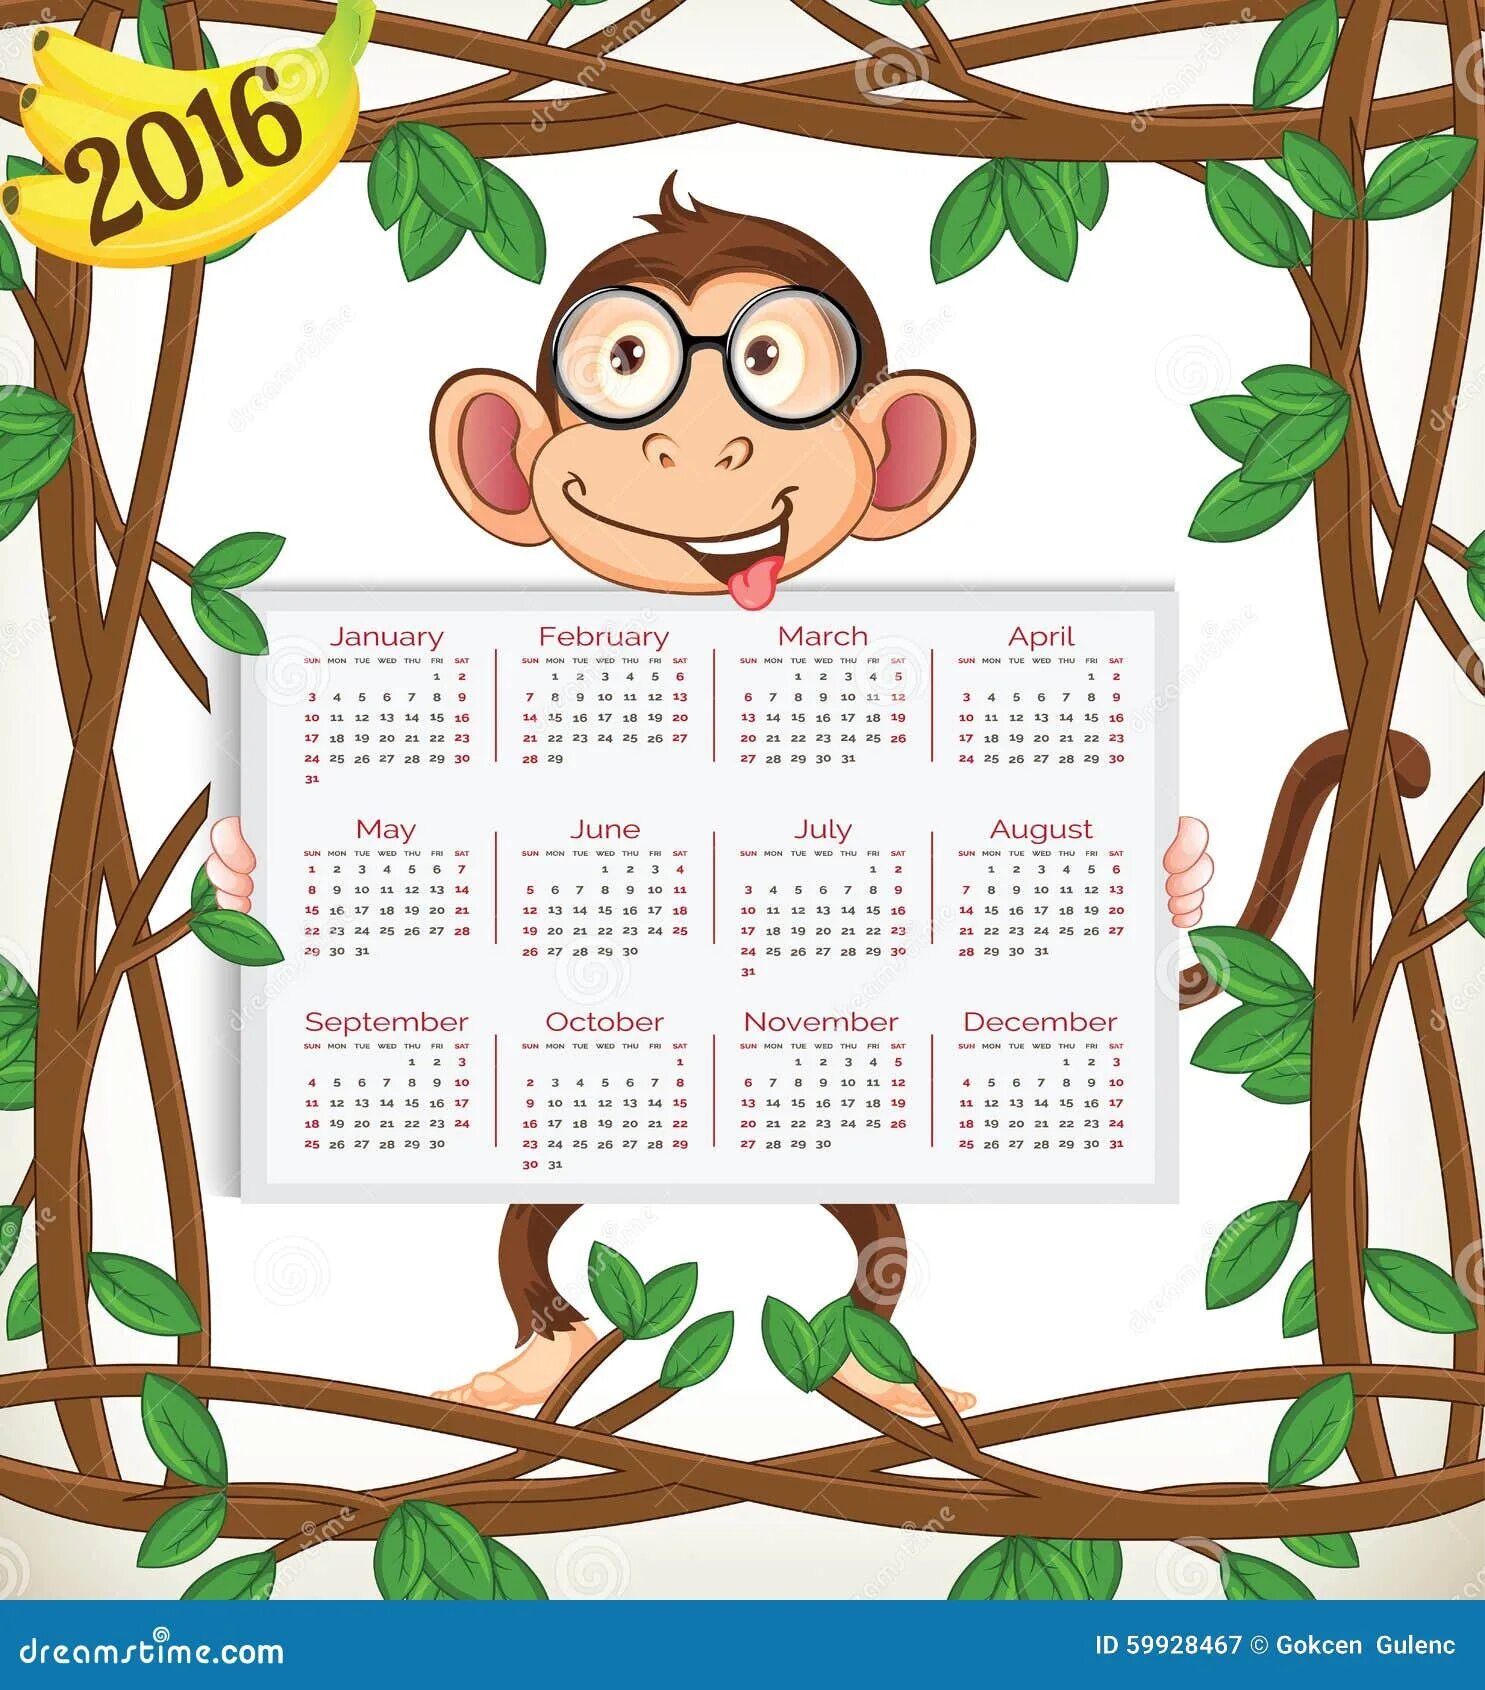 Календарь с обезьяной. Календарь 2016 год обезьяны. Календарь с обезьянами 2016. Календарь на новый год 2016 год обезьяны.